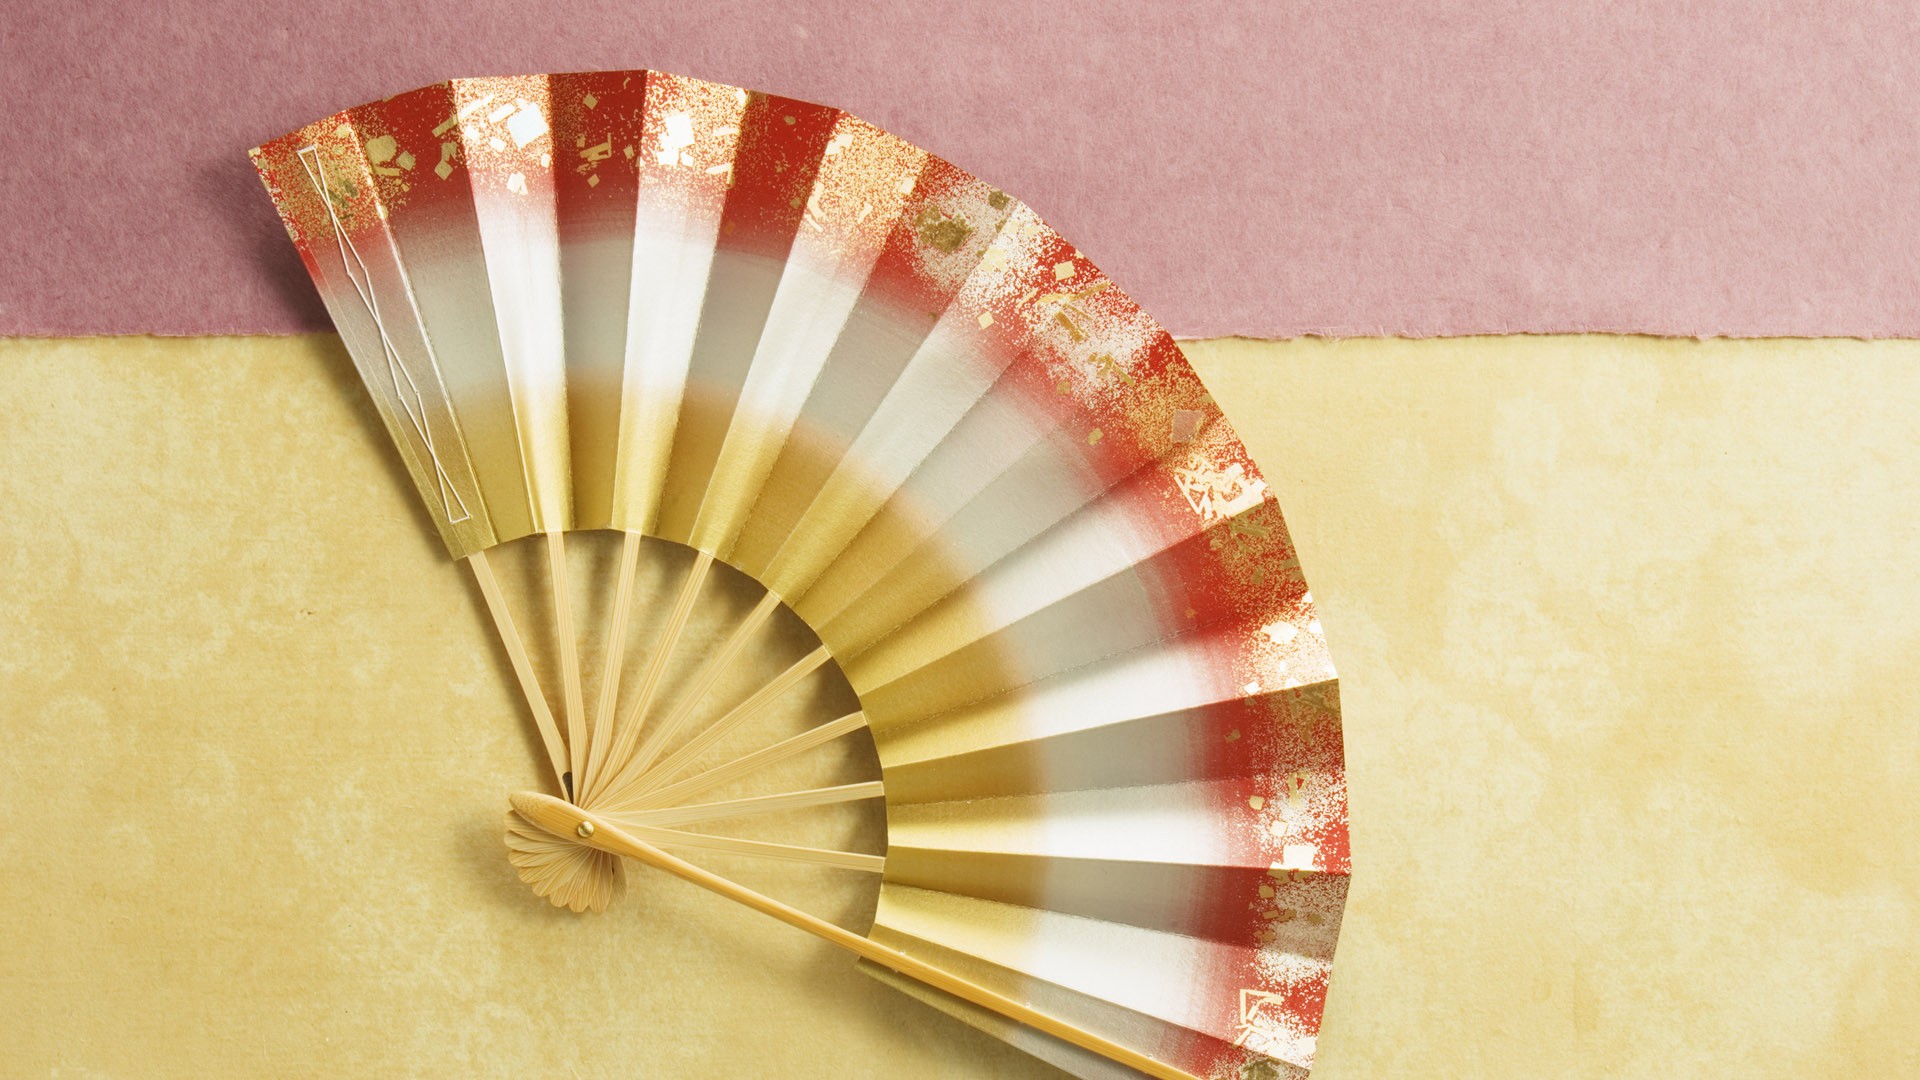 Fondos de año nuevo japonés Cultura #12 - 1920x1080